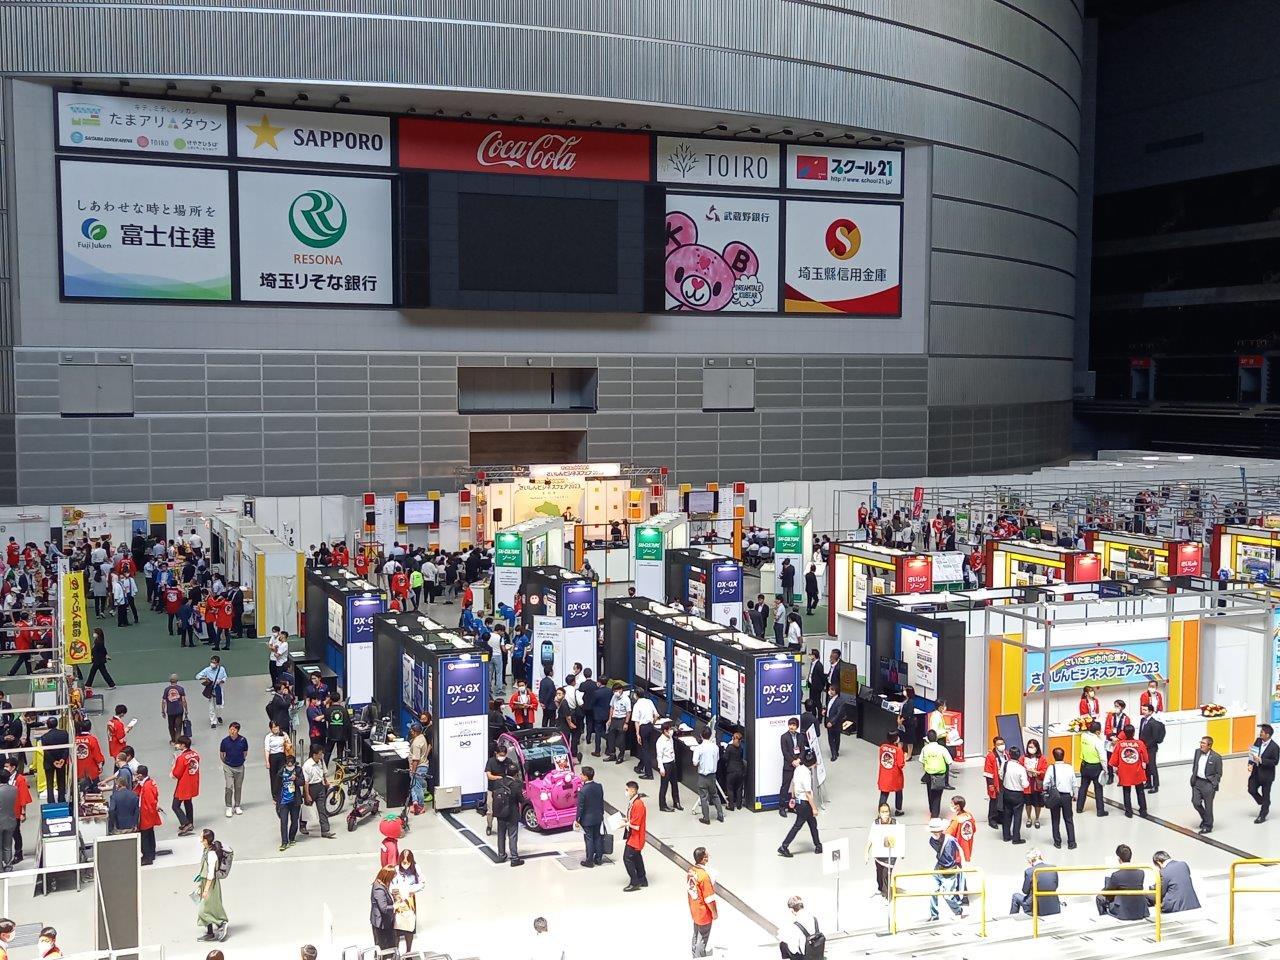 埼玉県内外より230の企業・団体が参加する
ハイブリッドビジネス展示・商談会
「さいしんビジネスフェア2023」が開催されました！